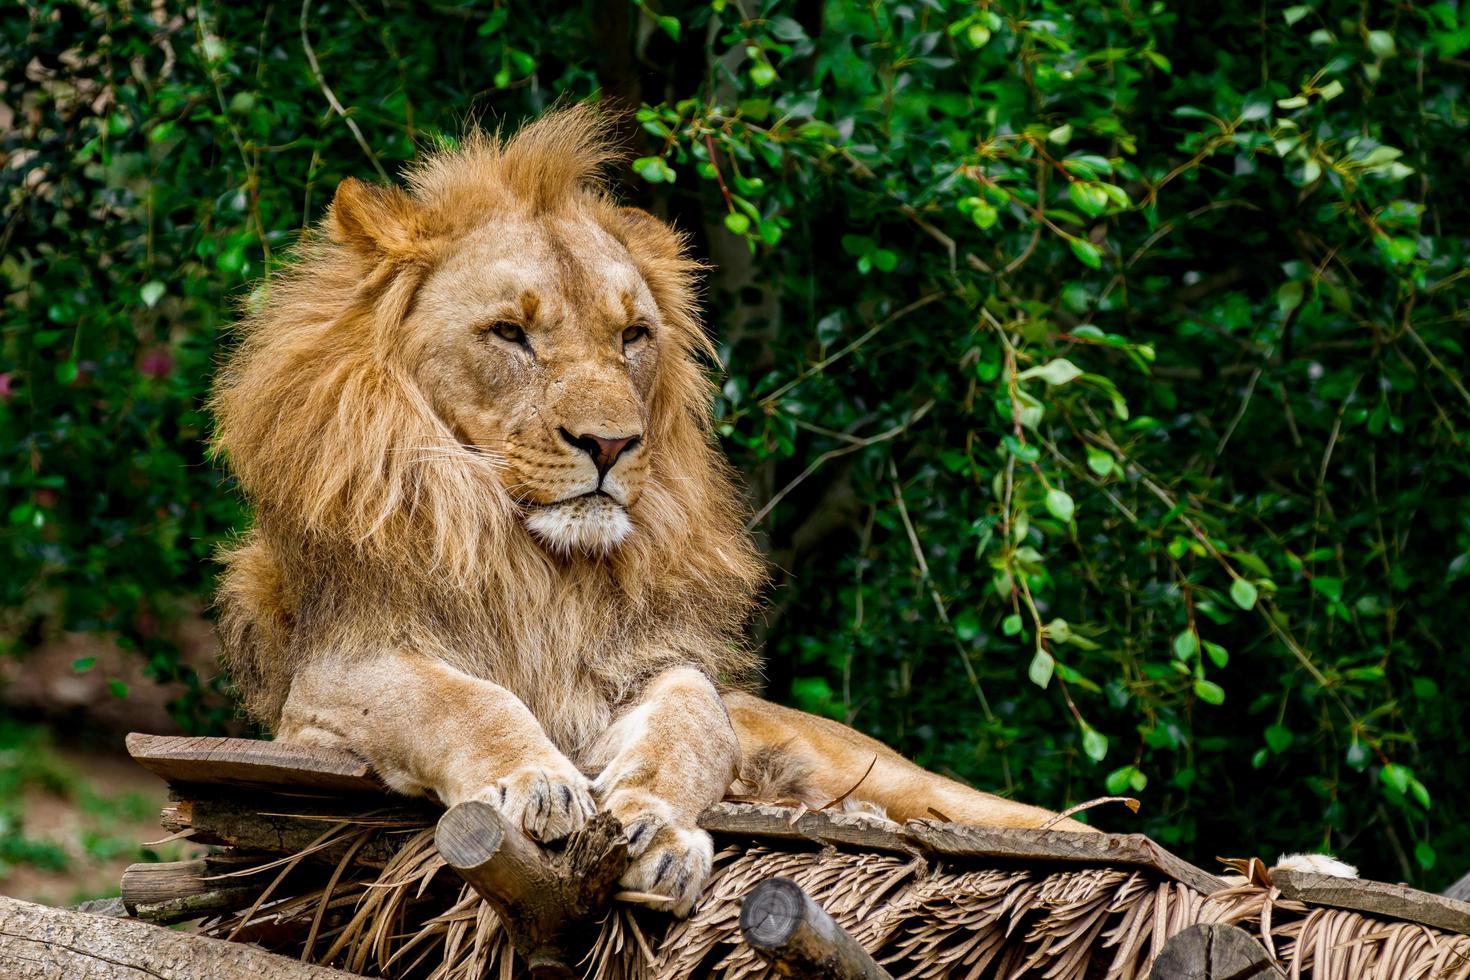 Portrait of Lion photo